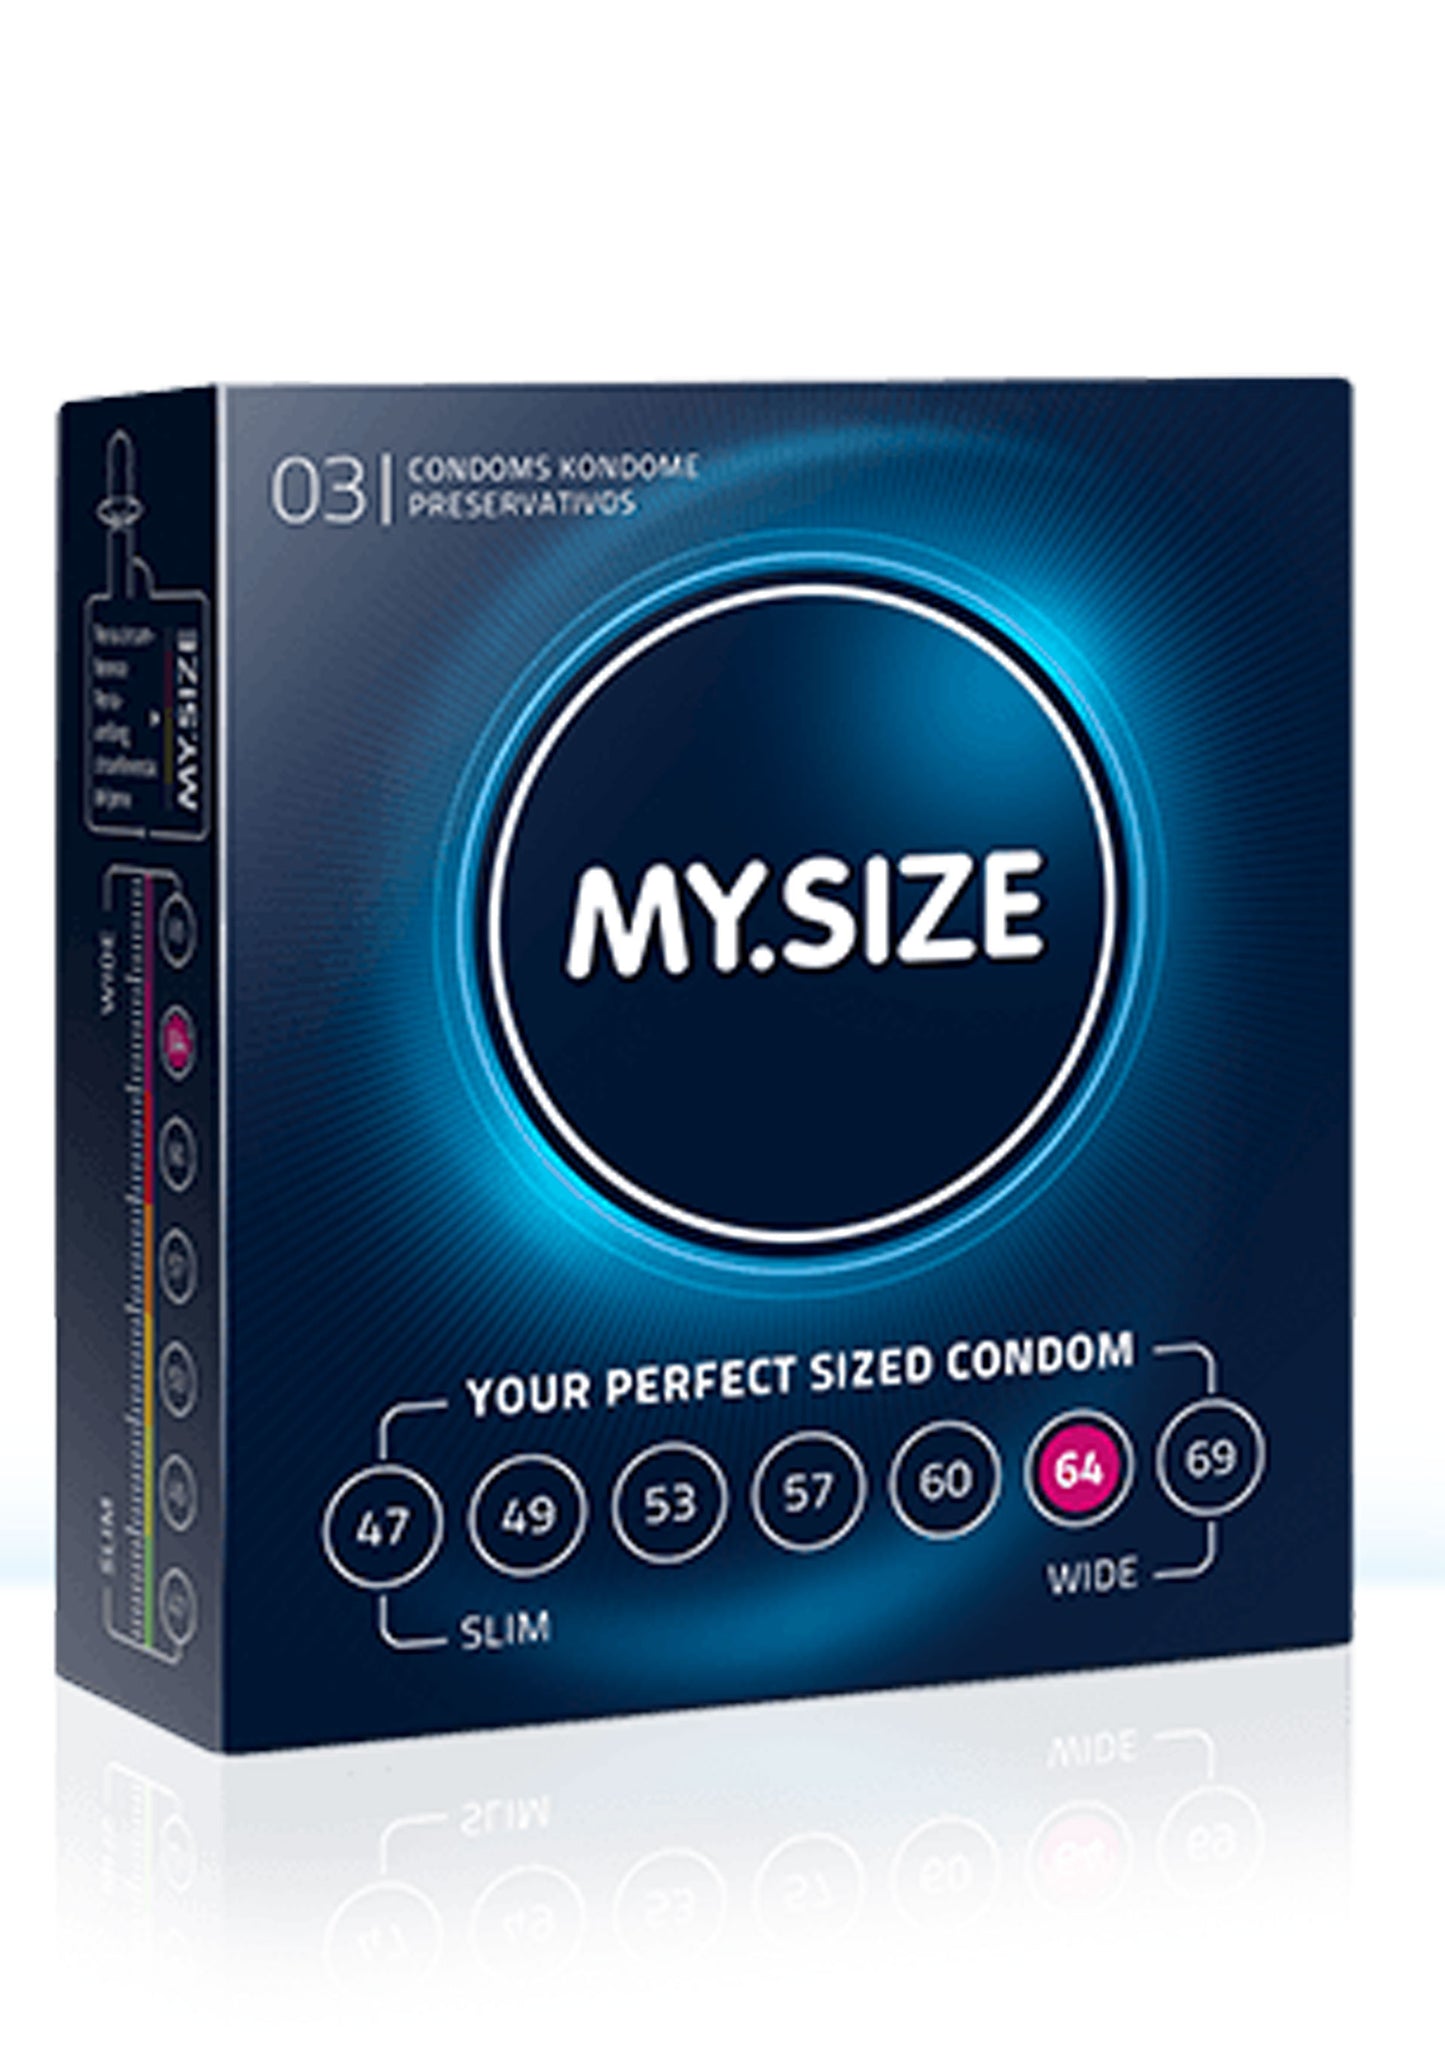 Preservativi MY.SIZE 64mm Condoms 3pcs